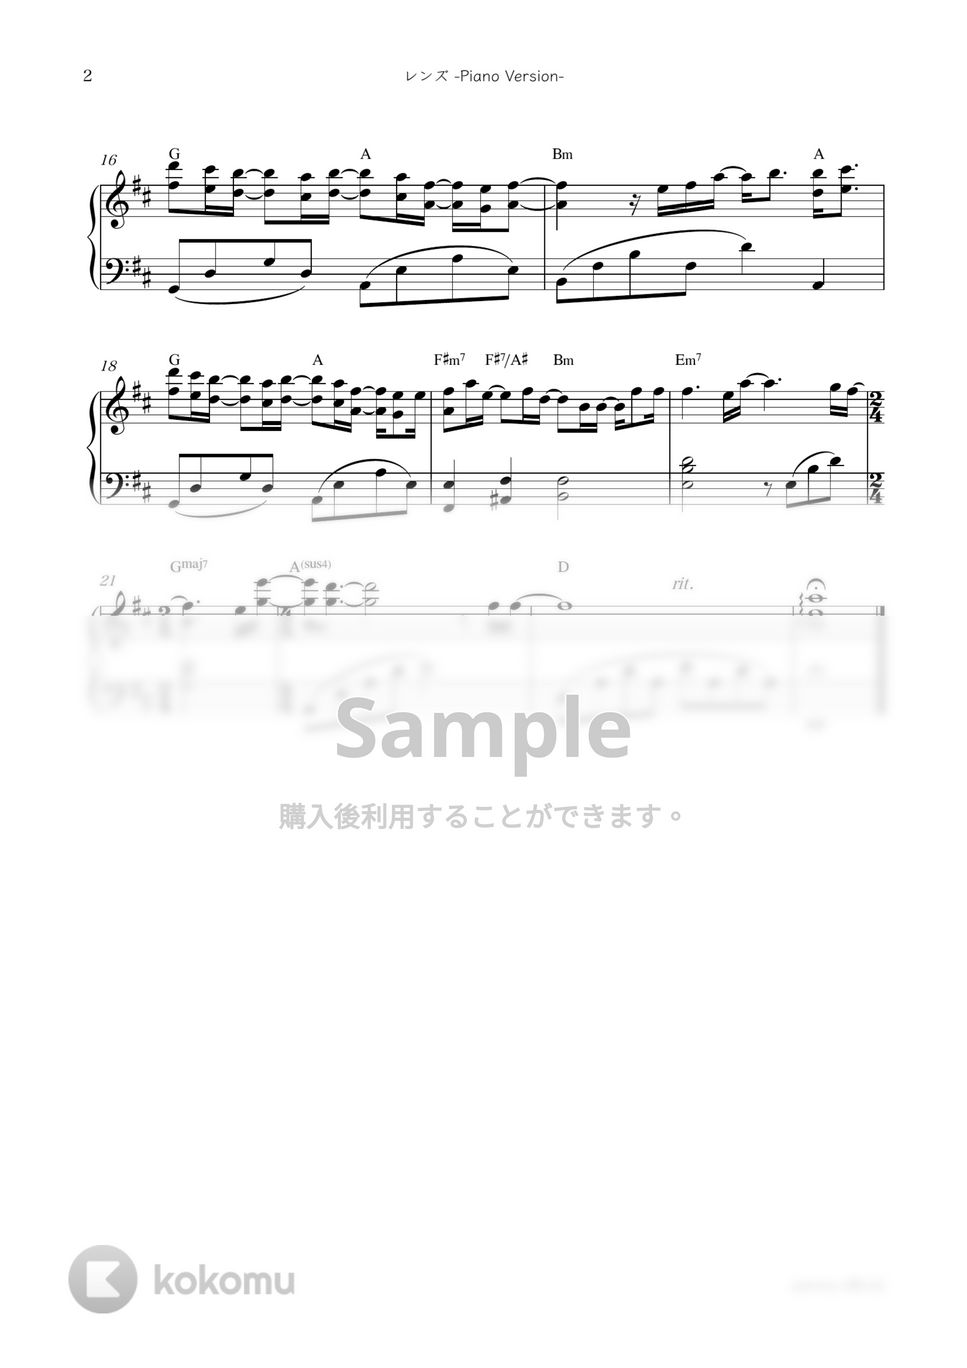 幾田りら - レンズ -Piano Version- by sammy